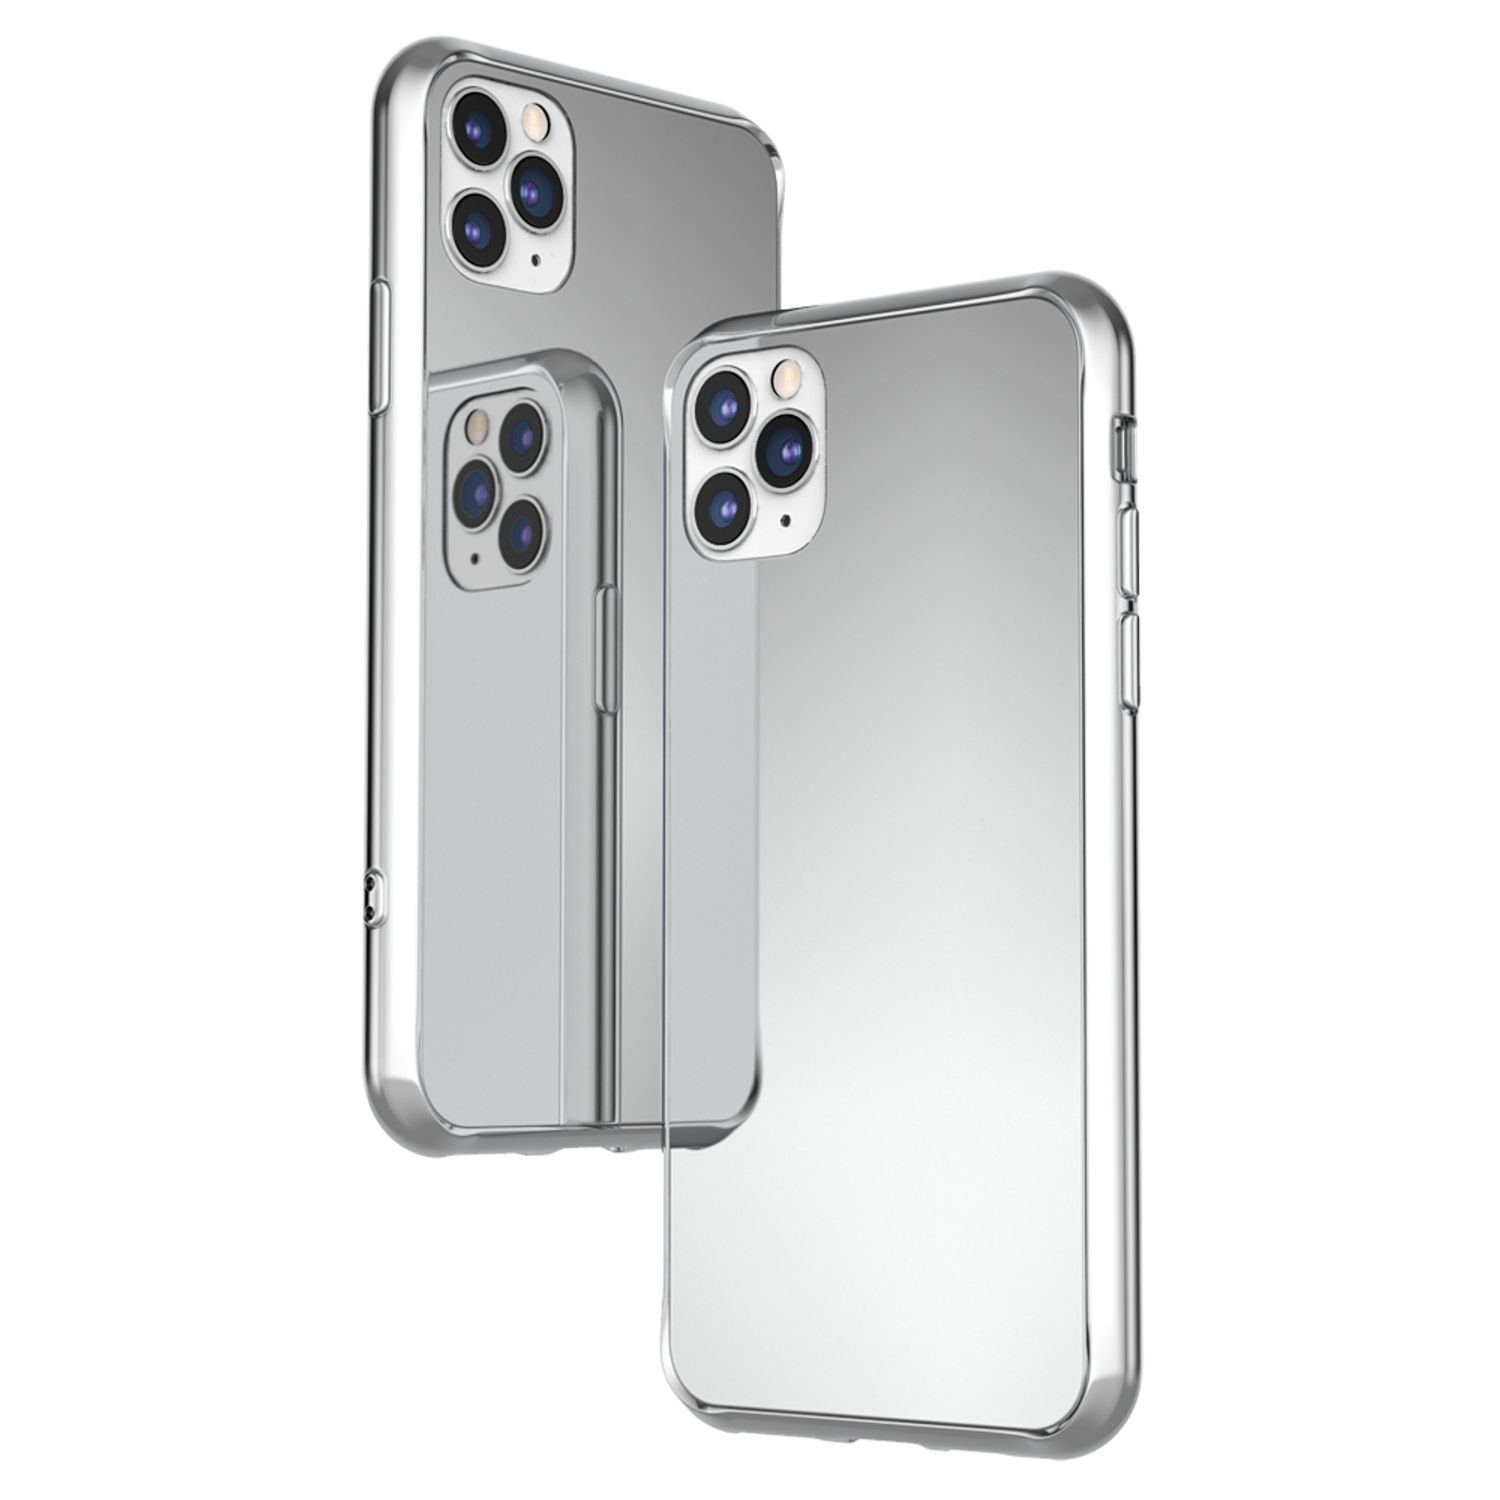 https://i.otto.de/i/otto/e89d9f71-eeac-5deb-af71-9489ea44c899/nalia-smartphone-huelle-apple-iphone-11-pro-max-spiegel-hartglas-huelle-super-klarer-spiegeleffekt-harte-rueckseite-wie-ein-echter-spiegel-silikon-rahmen-kratzfest-mirror-case-tempered-glass-cover-bumper-flexibel-hardcase-schutzhuelle-etui-handy-tasche.jpg?$formatz$